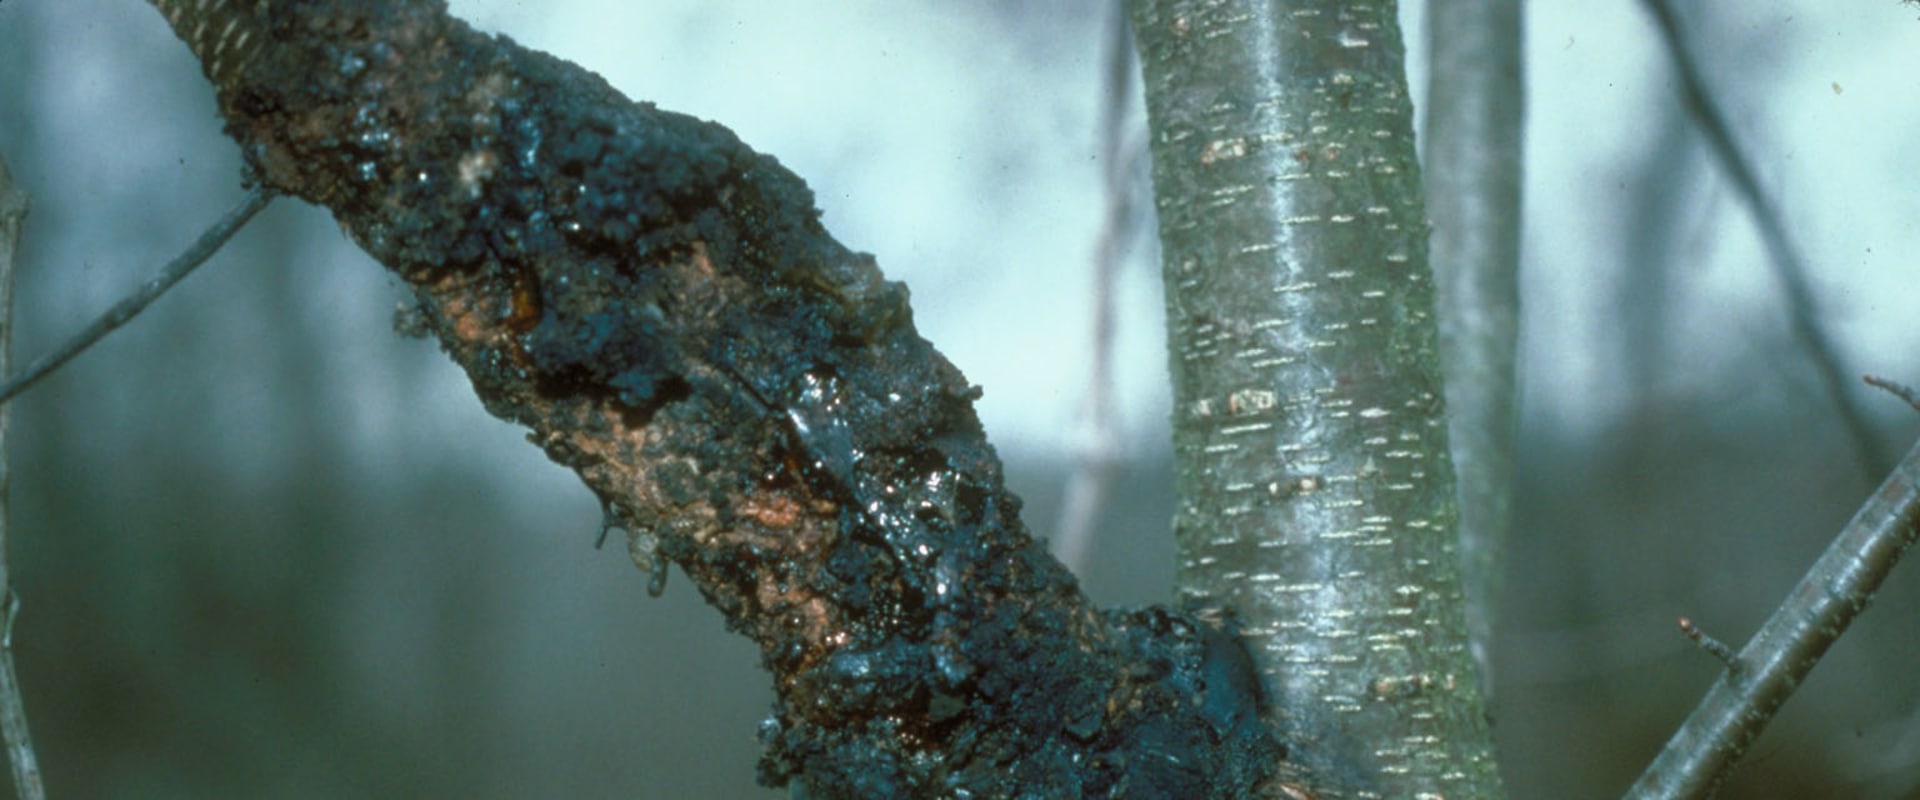 How do tree diseases spread?